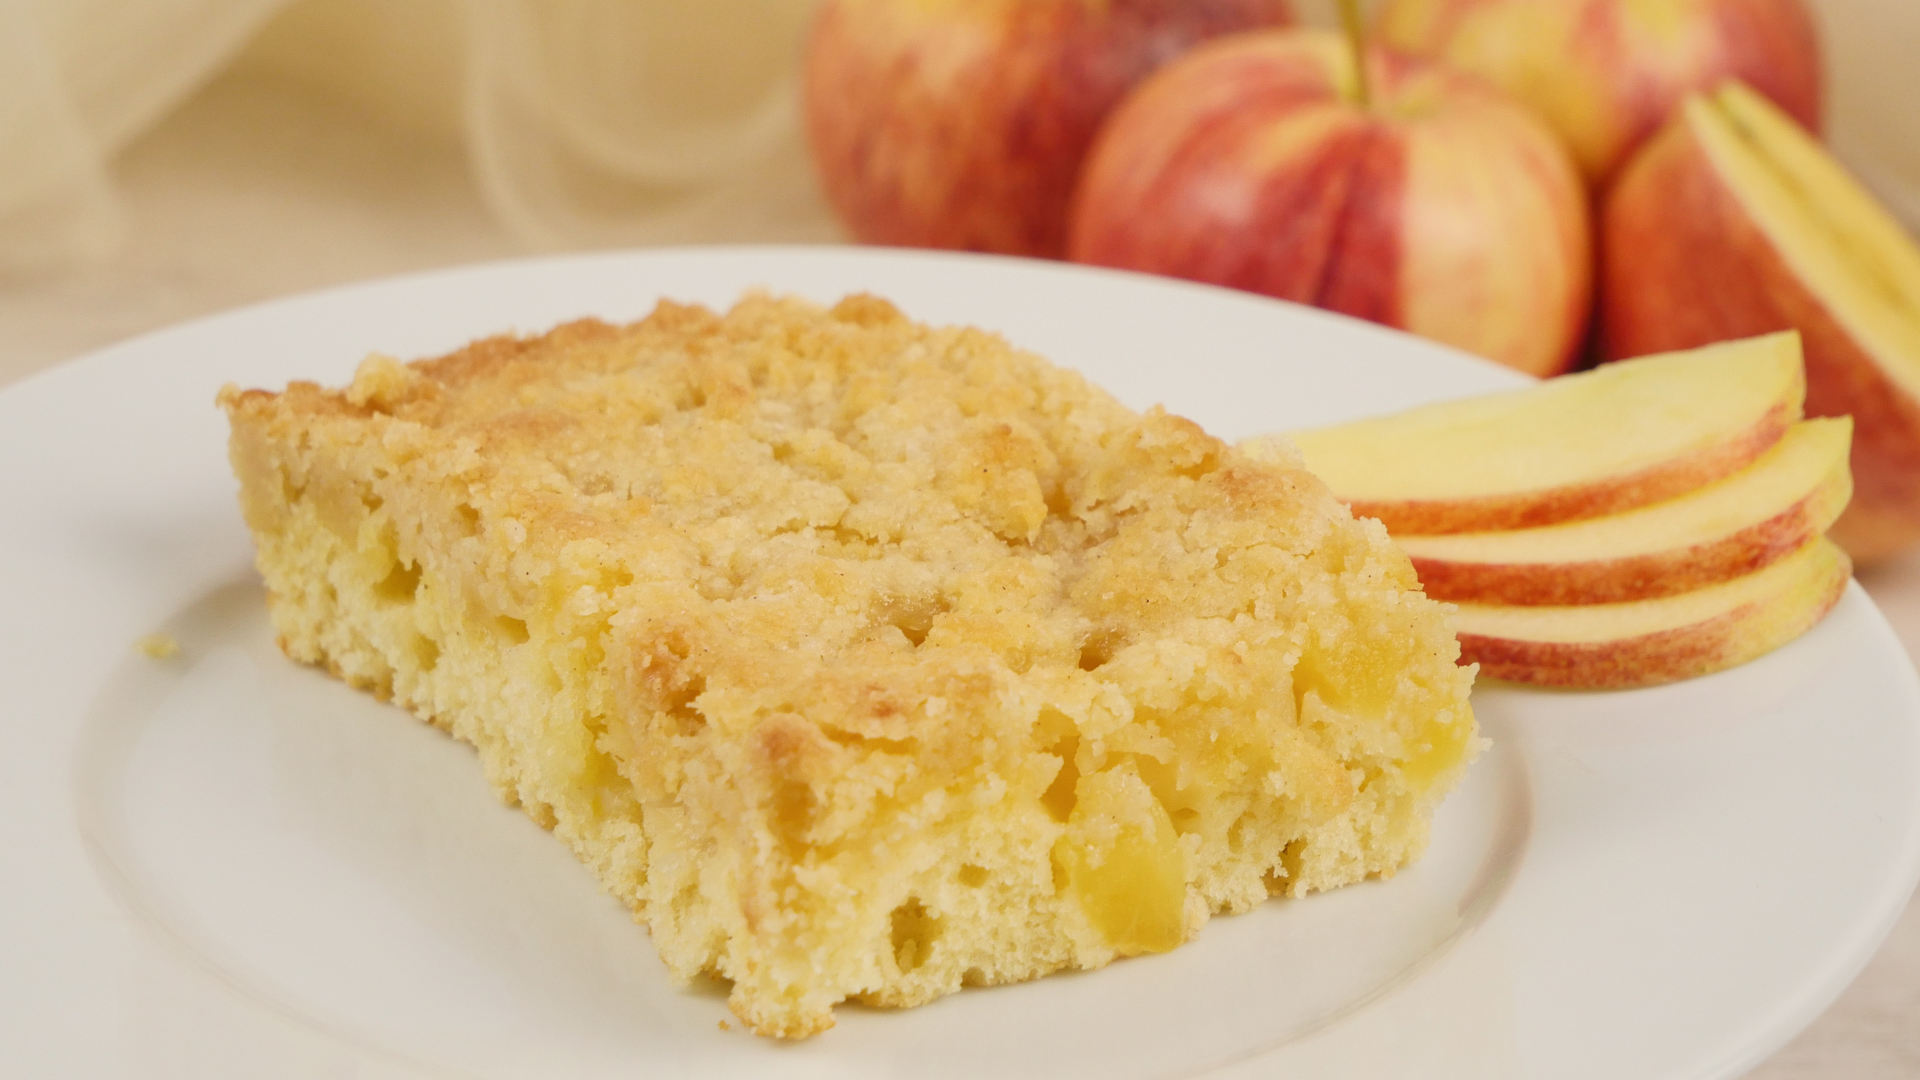 Rezept: Omas Apfelstreuselkuchen vom Blech | Blechkuchen ...